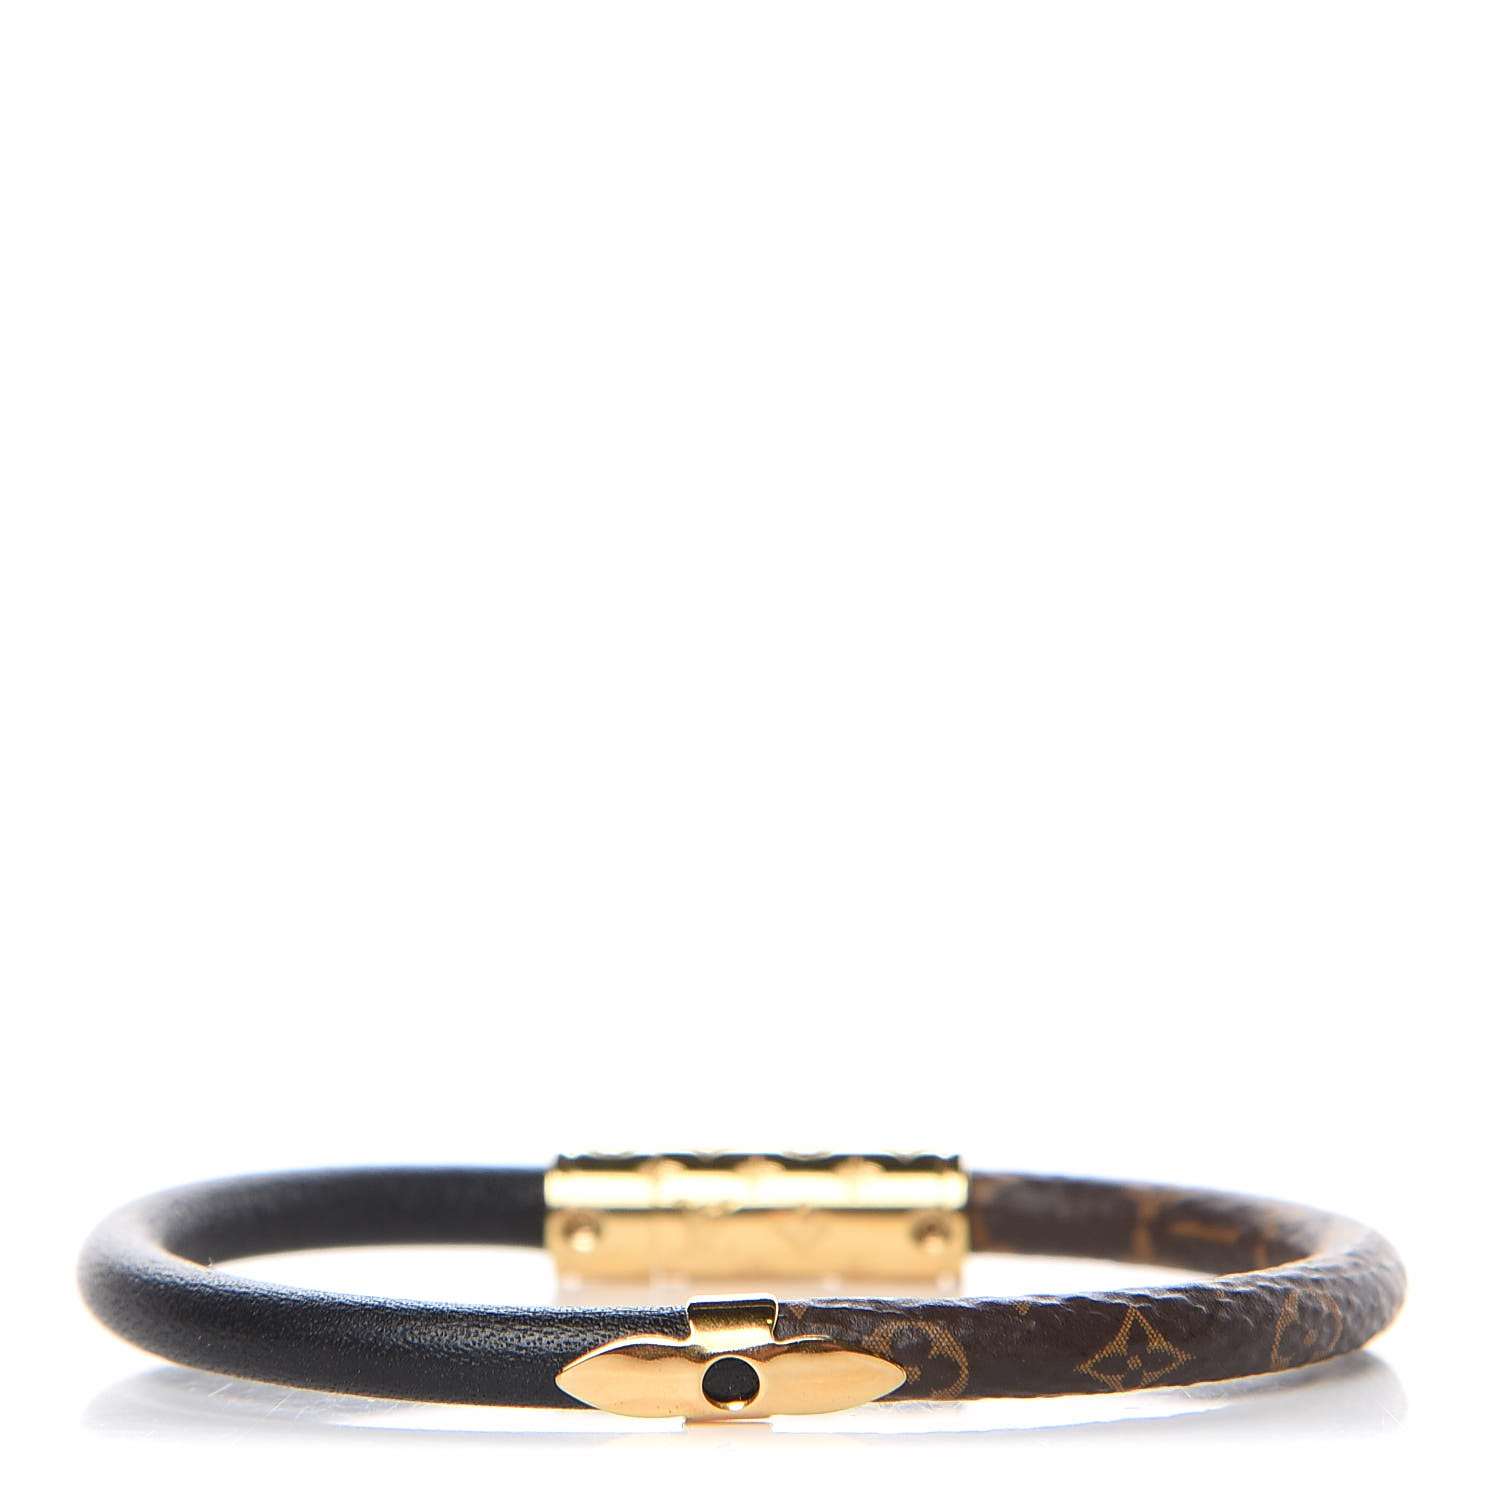 Louis Vuitton Confidential Bracelet Reviewed